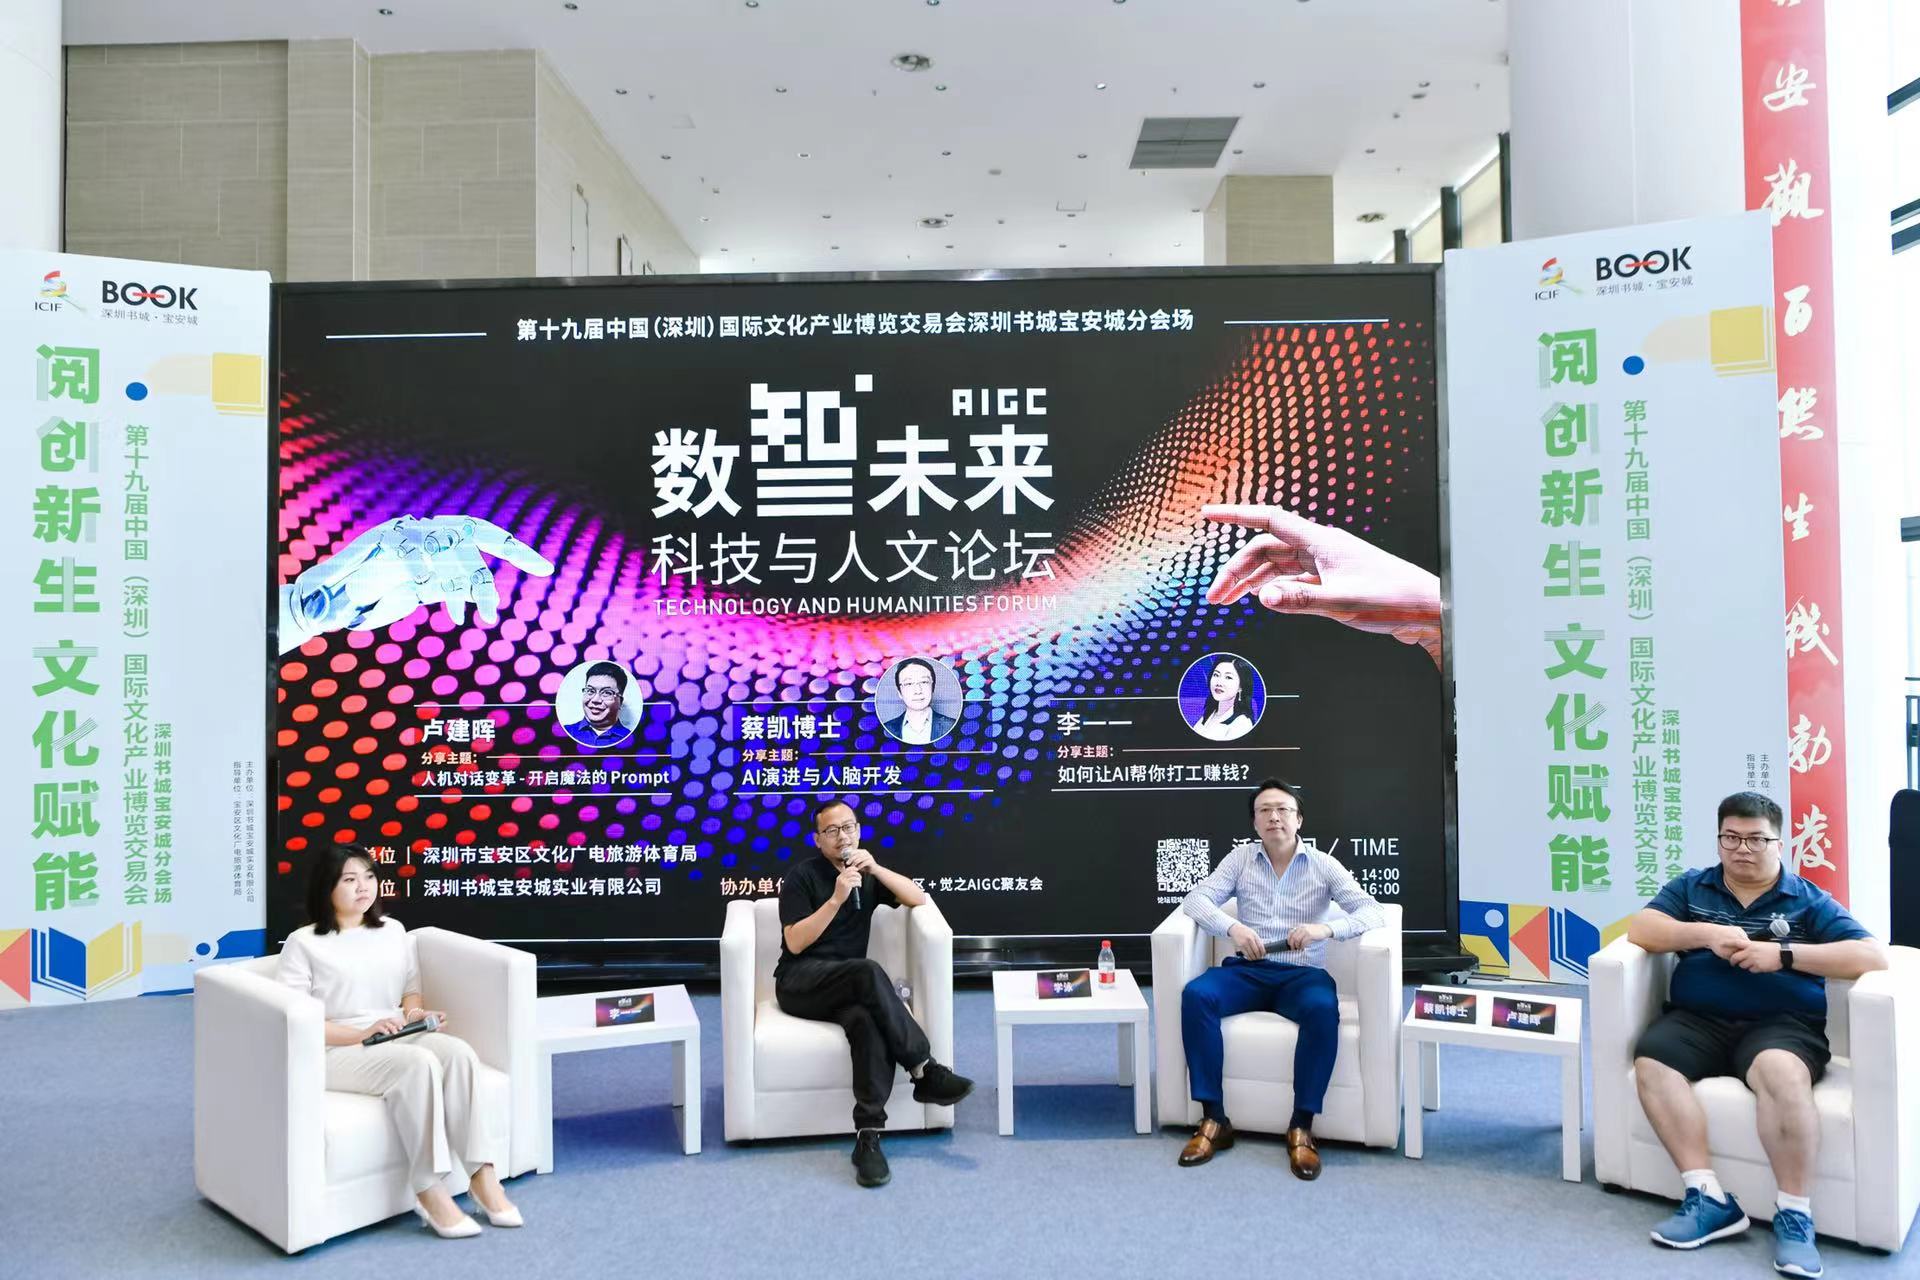 用好AI为文化产业服务！“AIGC数智未来的科技与人文论坛”在深圳书城宝安城举行